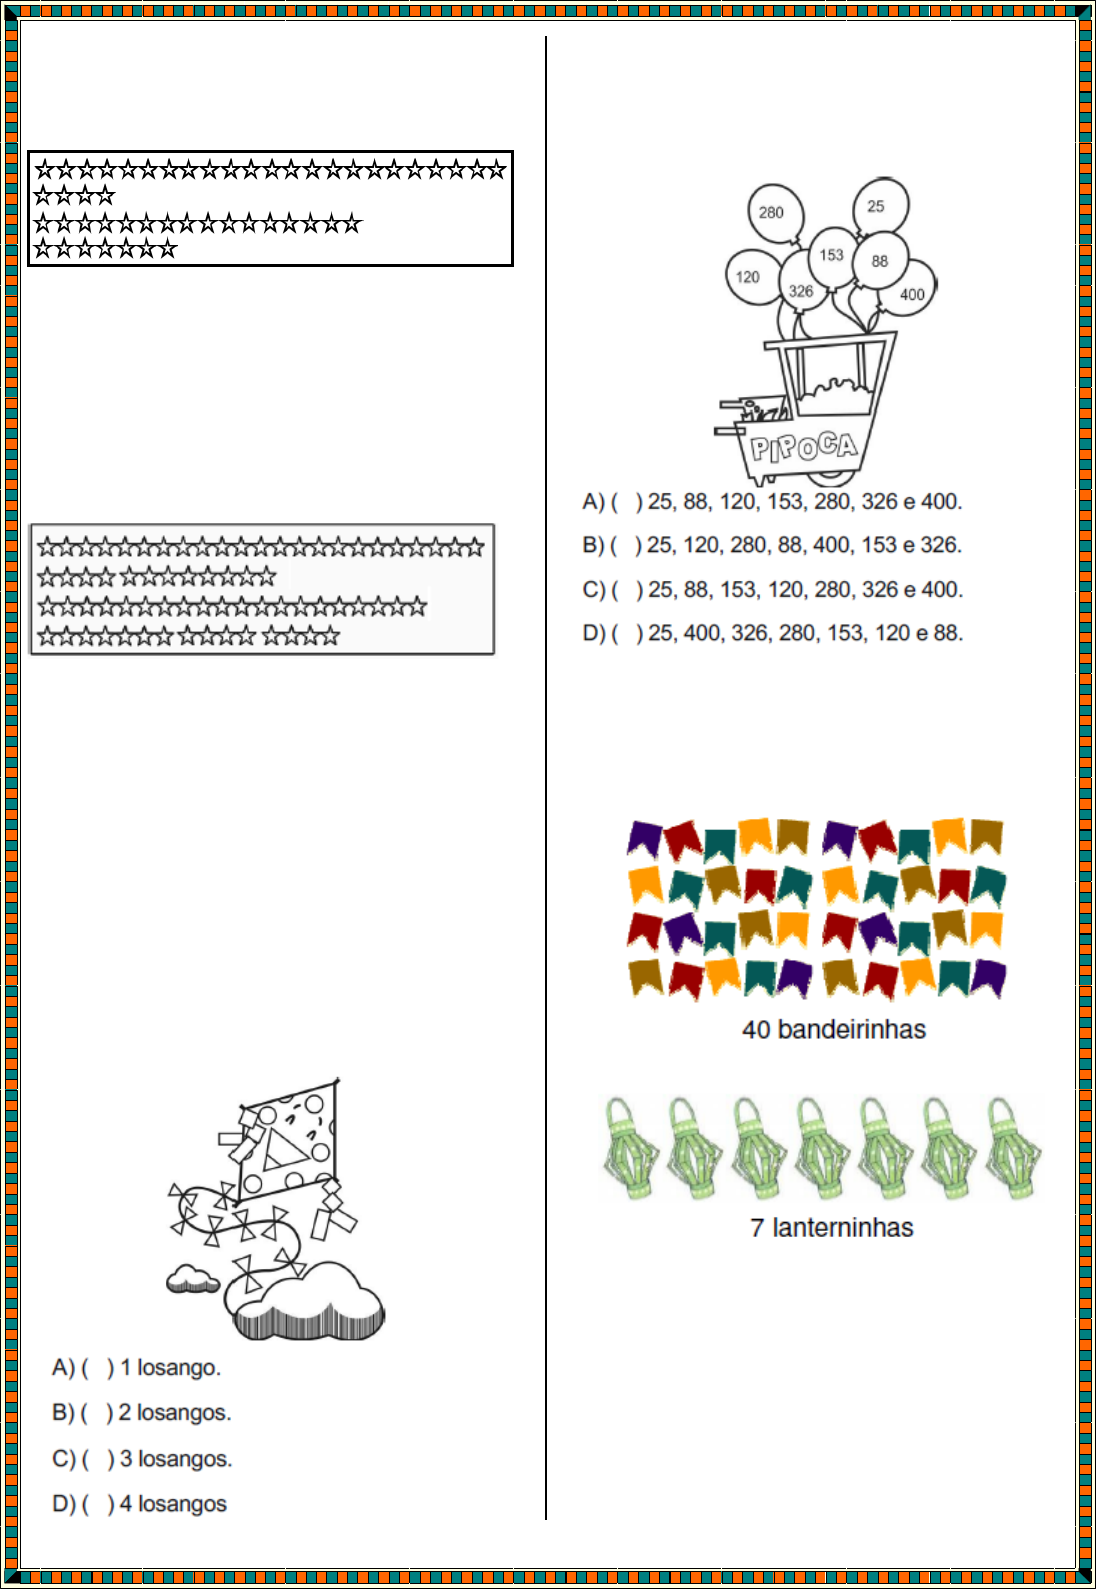 Grupo De Números Coloridos E De Notação Matemática Na Tabela De Madeira  Imagem de Stock - Imagem de conhecimento, conceito: 154587869